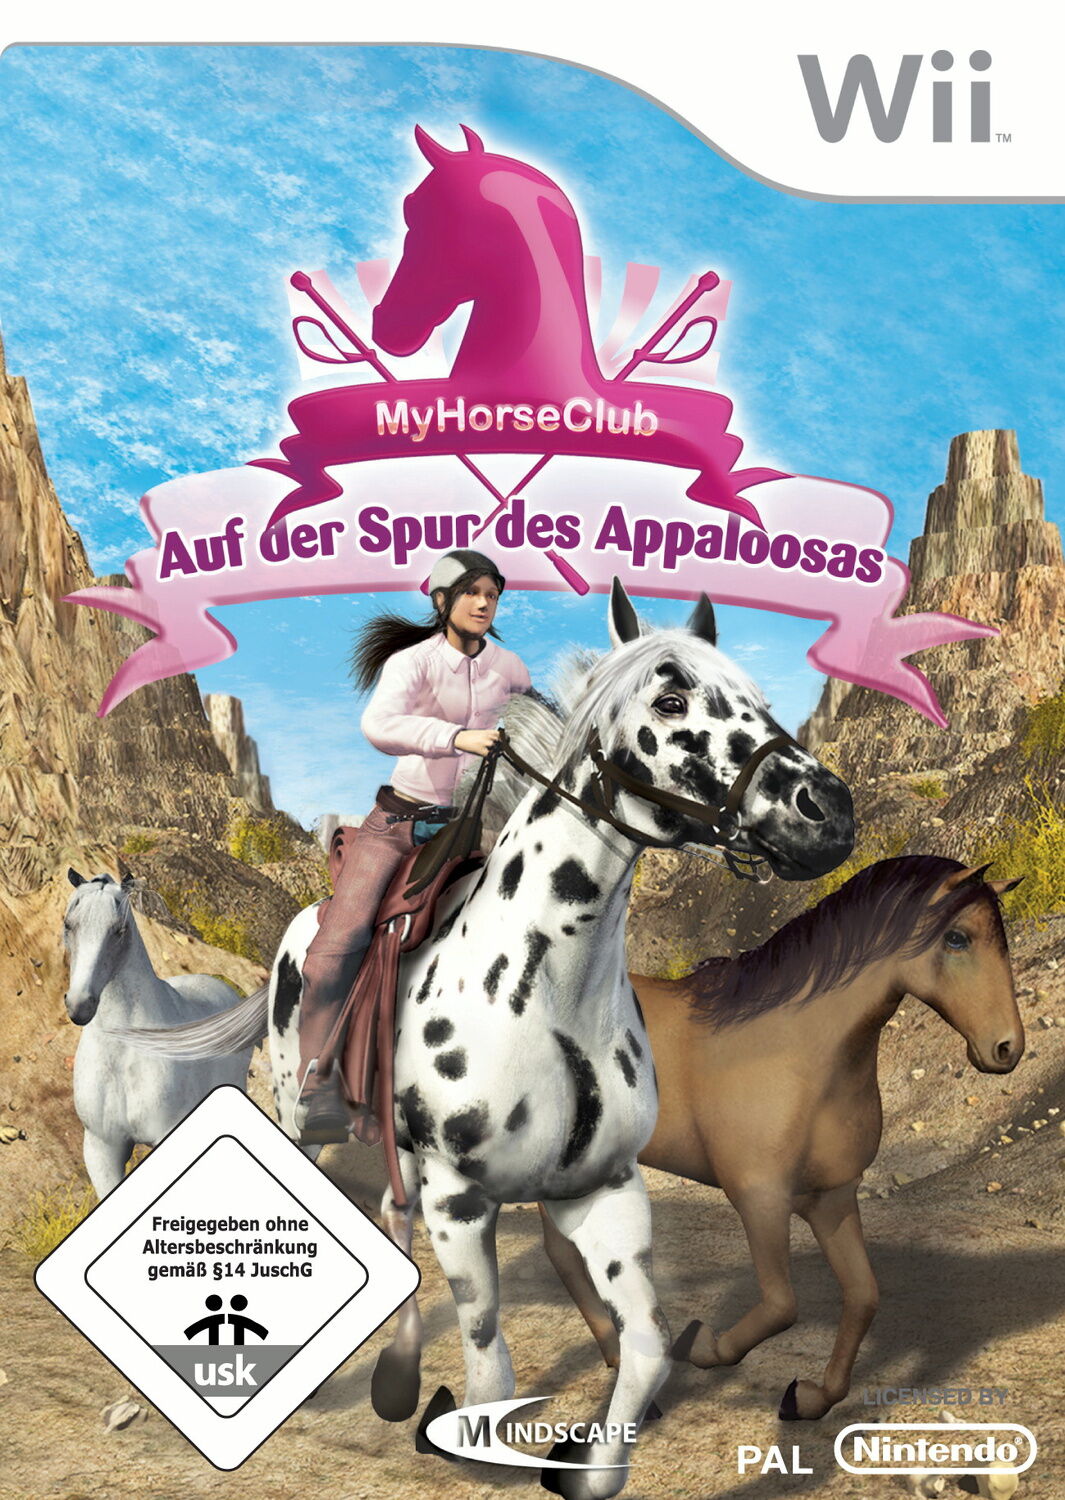 My Horse Club - Auf der Spur des Appaloosas